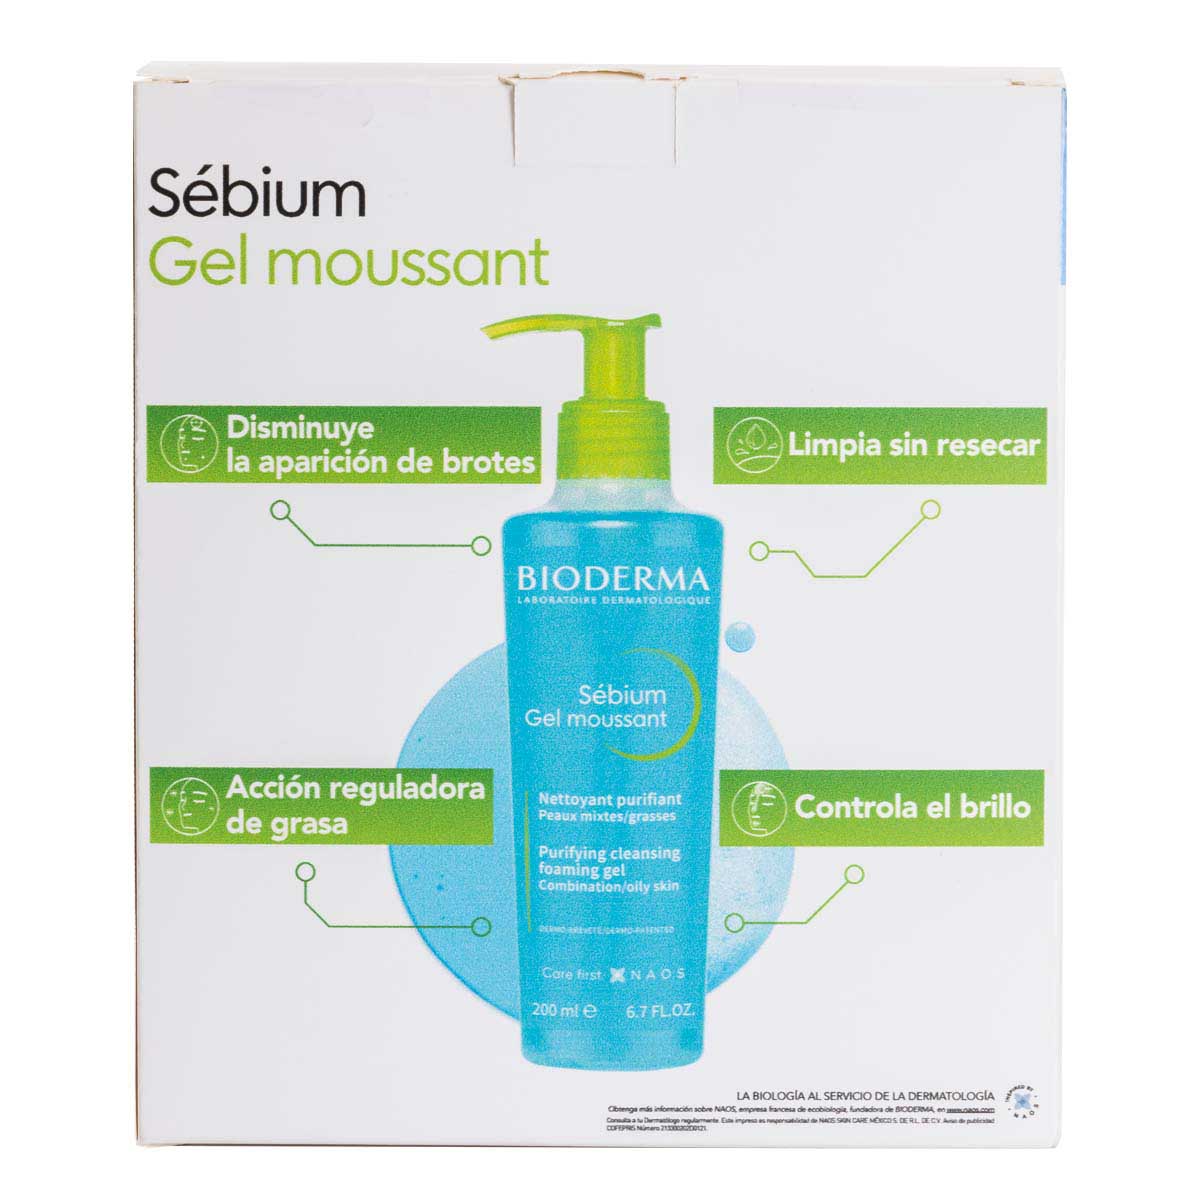 Bioderma Kit para piel mixta a grasa, Sébium Gel Moussant, 200ml + Mini Sébium H2O, 20ml + Mini Photoderm Cover Touch Mineral, 2ml